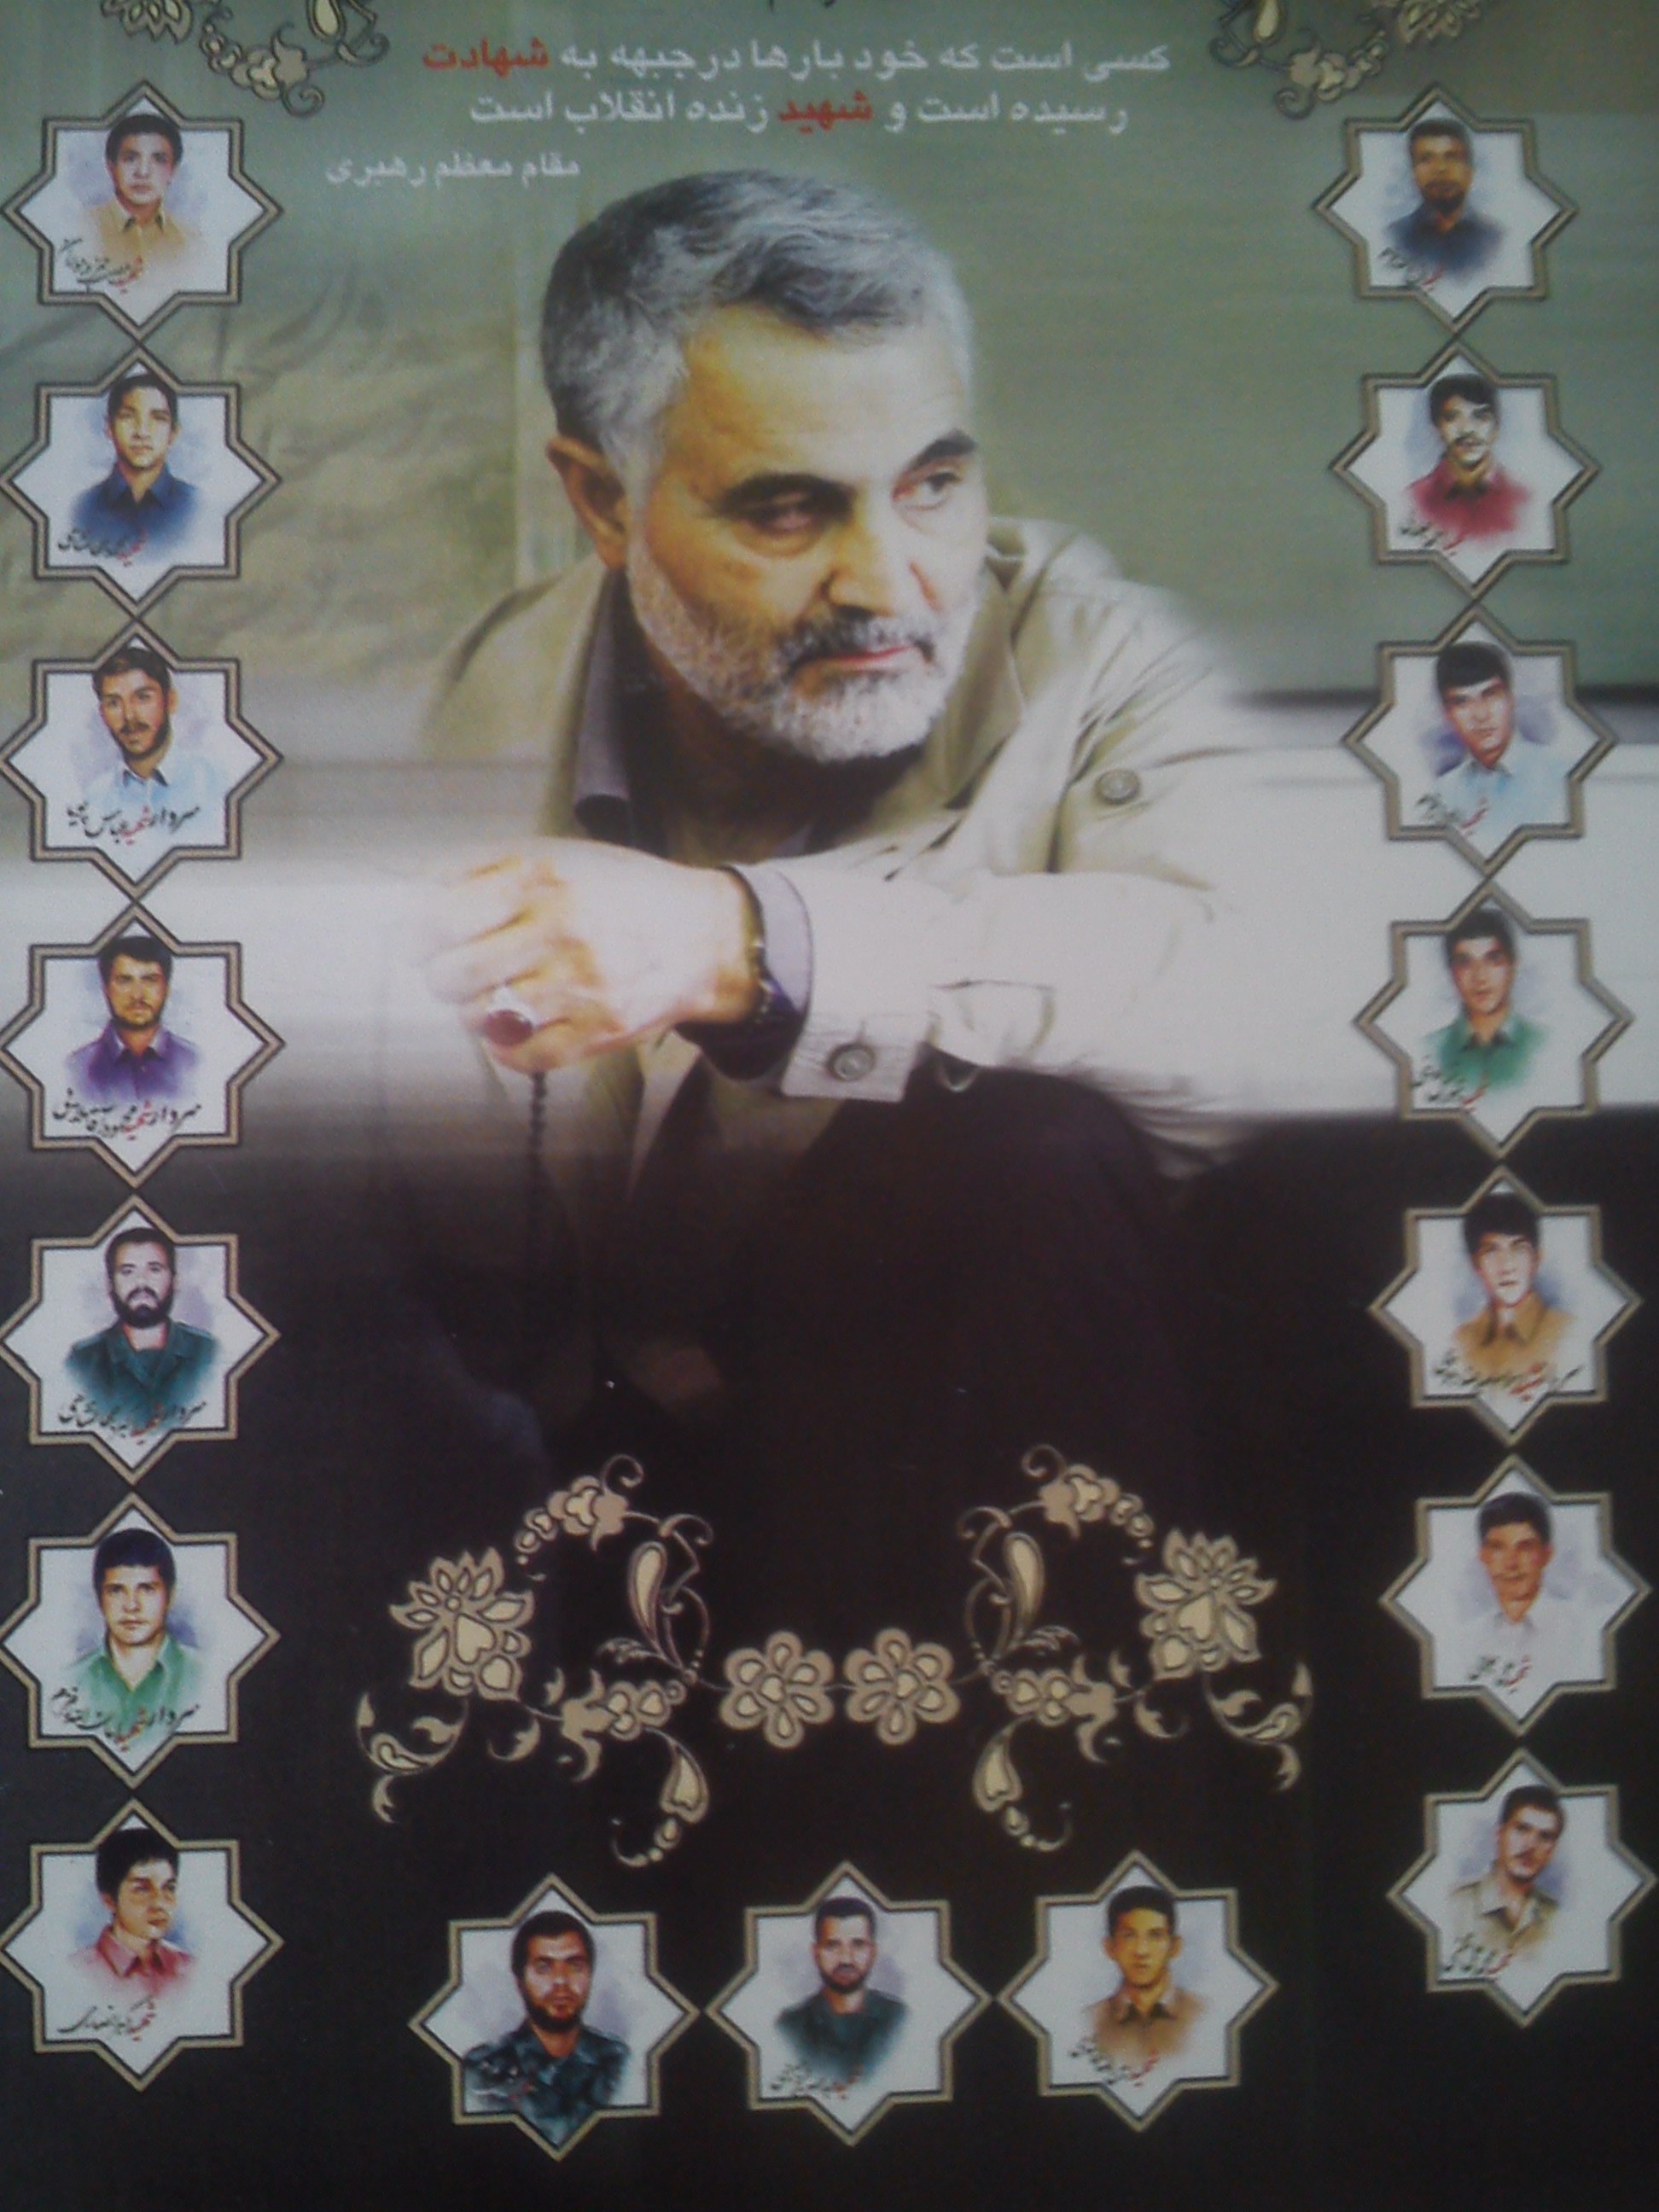 「殉教者たち記念式典」のポスター。真ん中に写っているのがソレイマーニー司令官で、その上には「彼は何度も戦線で殉教した、革命の生きた殉教者である：革命最高指導者」と書かれてある。